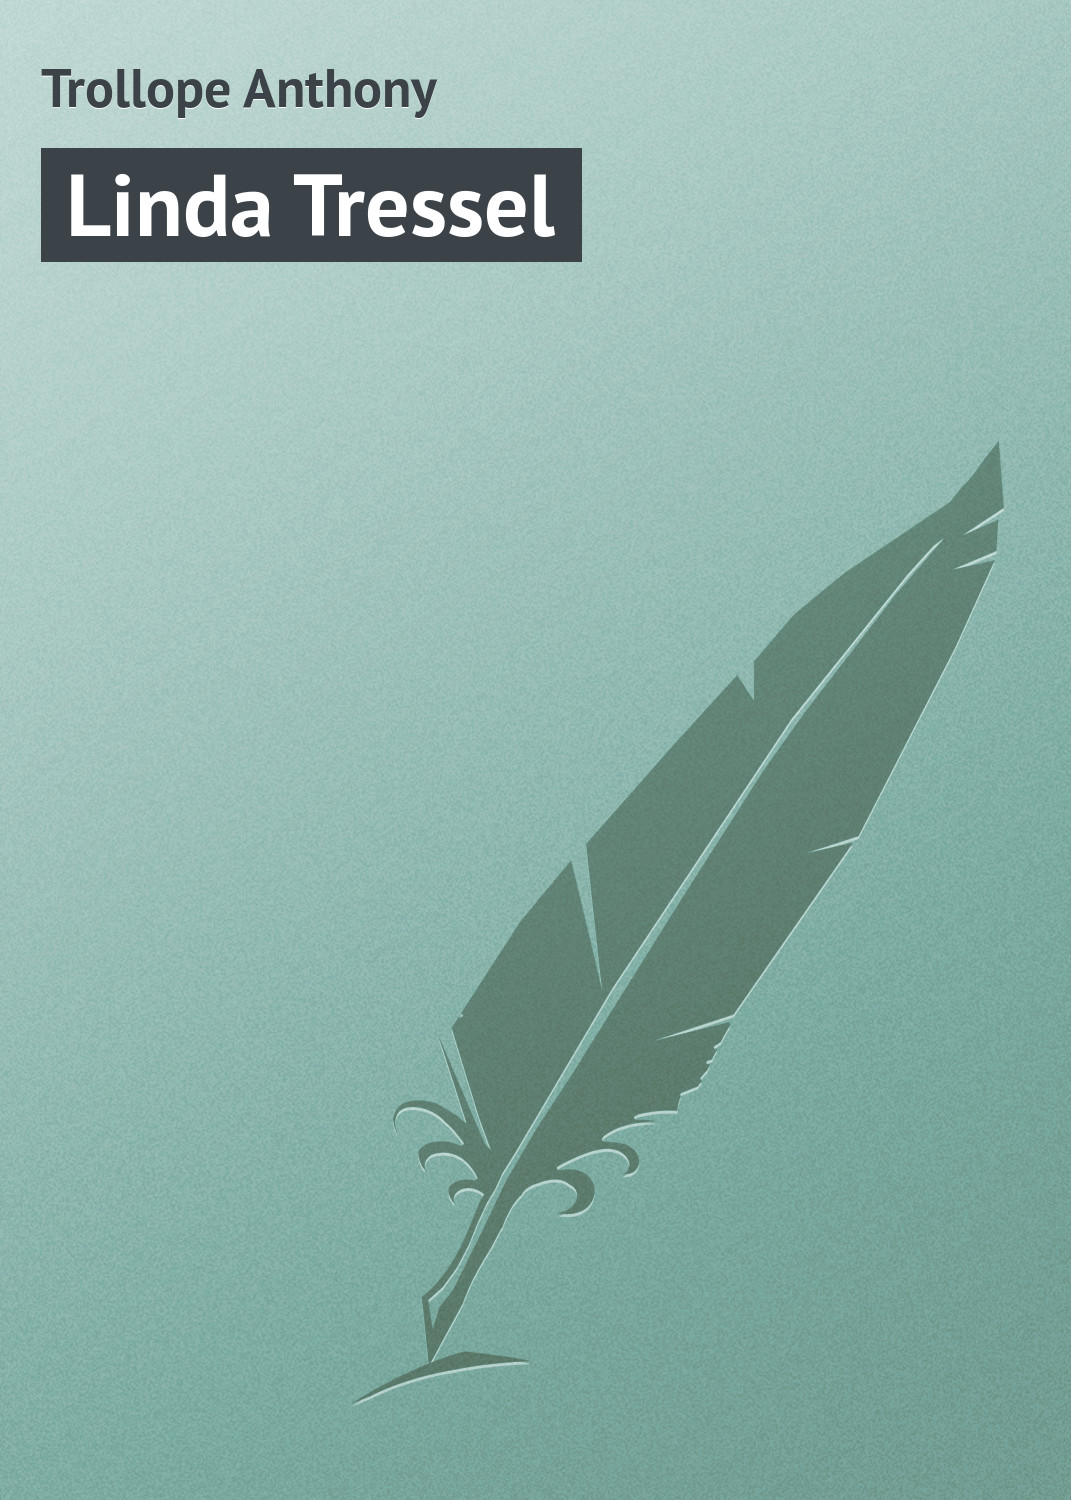 Книга Linda Tressel из серии , созданная Anthony Trollope, может относится к жанру Иностранные языки, Зарубежная классика. Стоимость электронной книги Linda Tressel с идентификатором 23166787 составляет 5.99 руб.